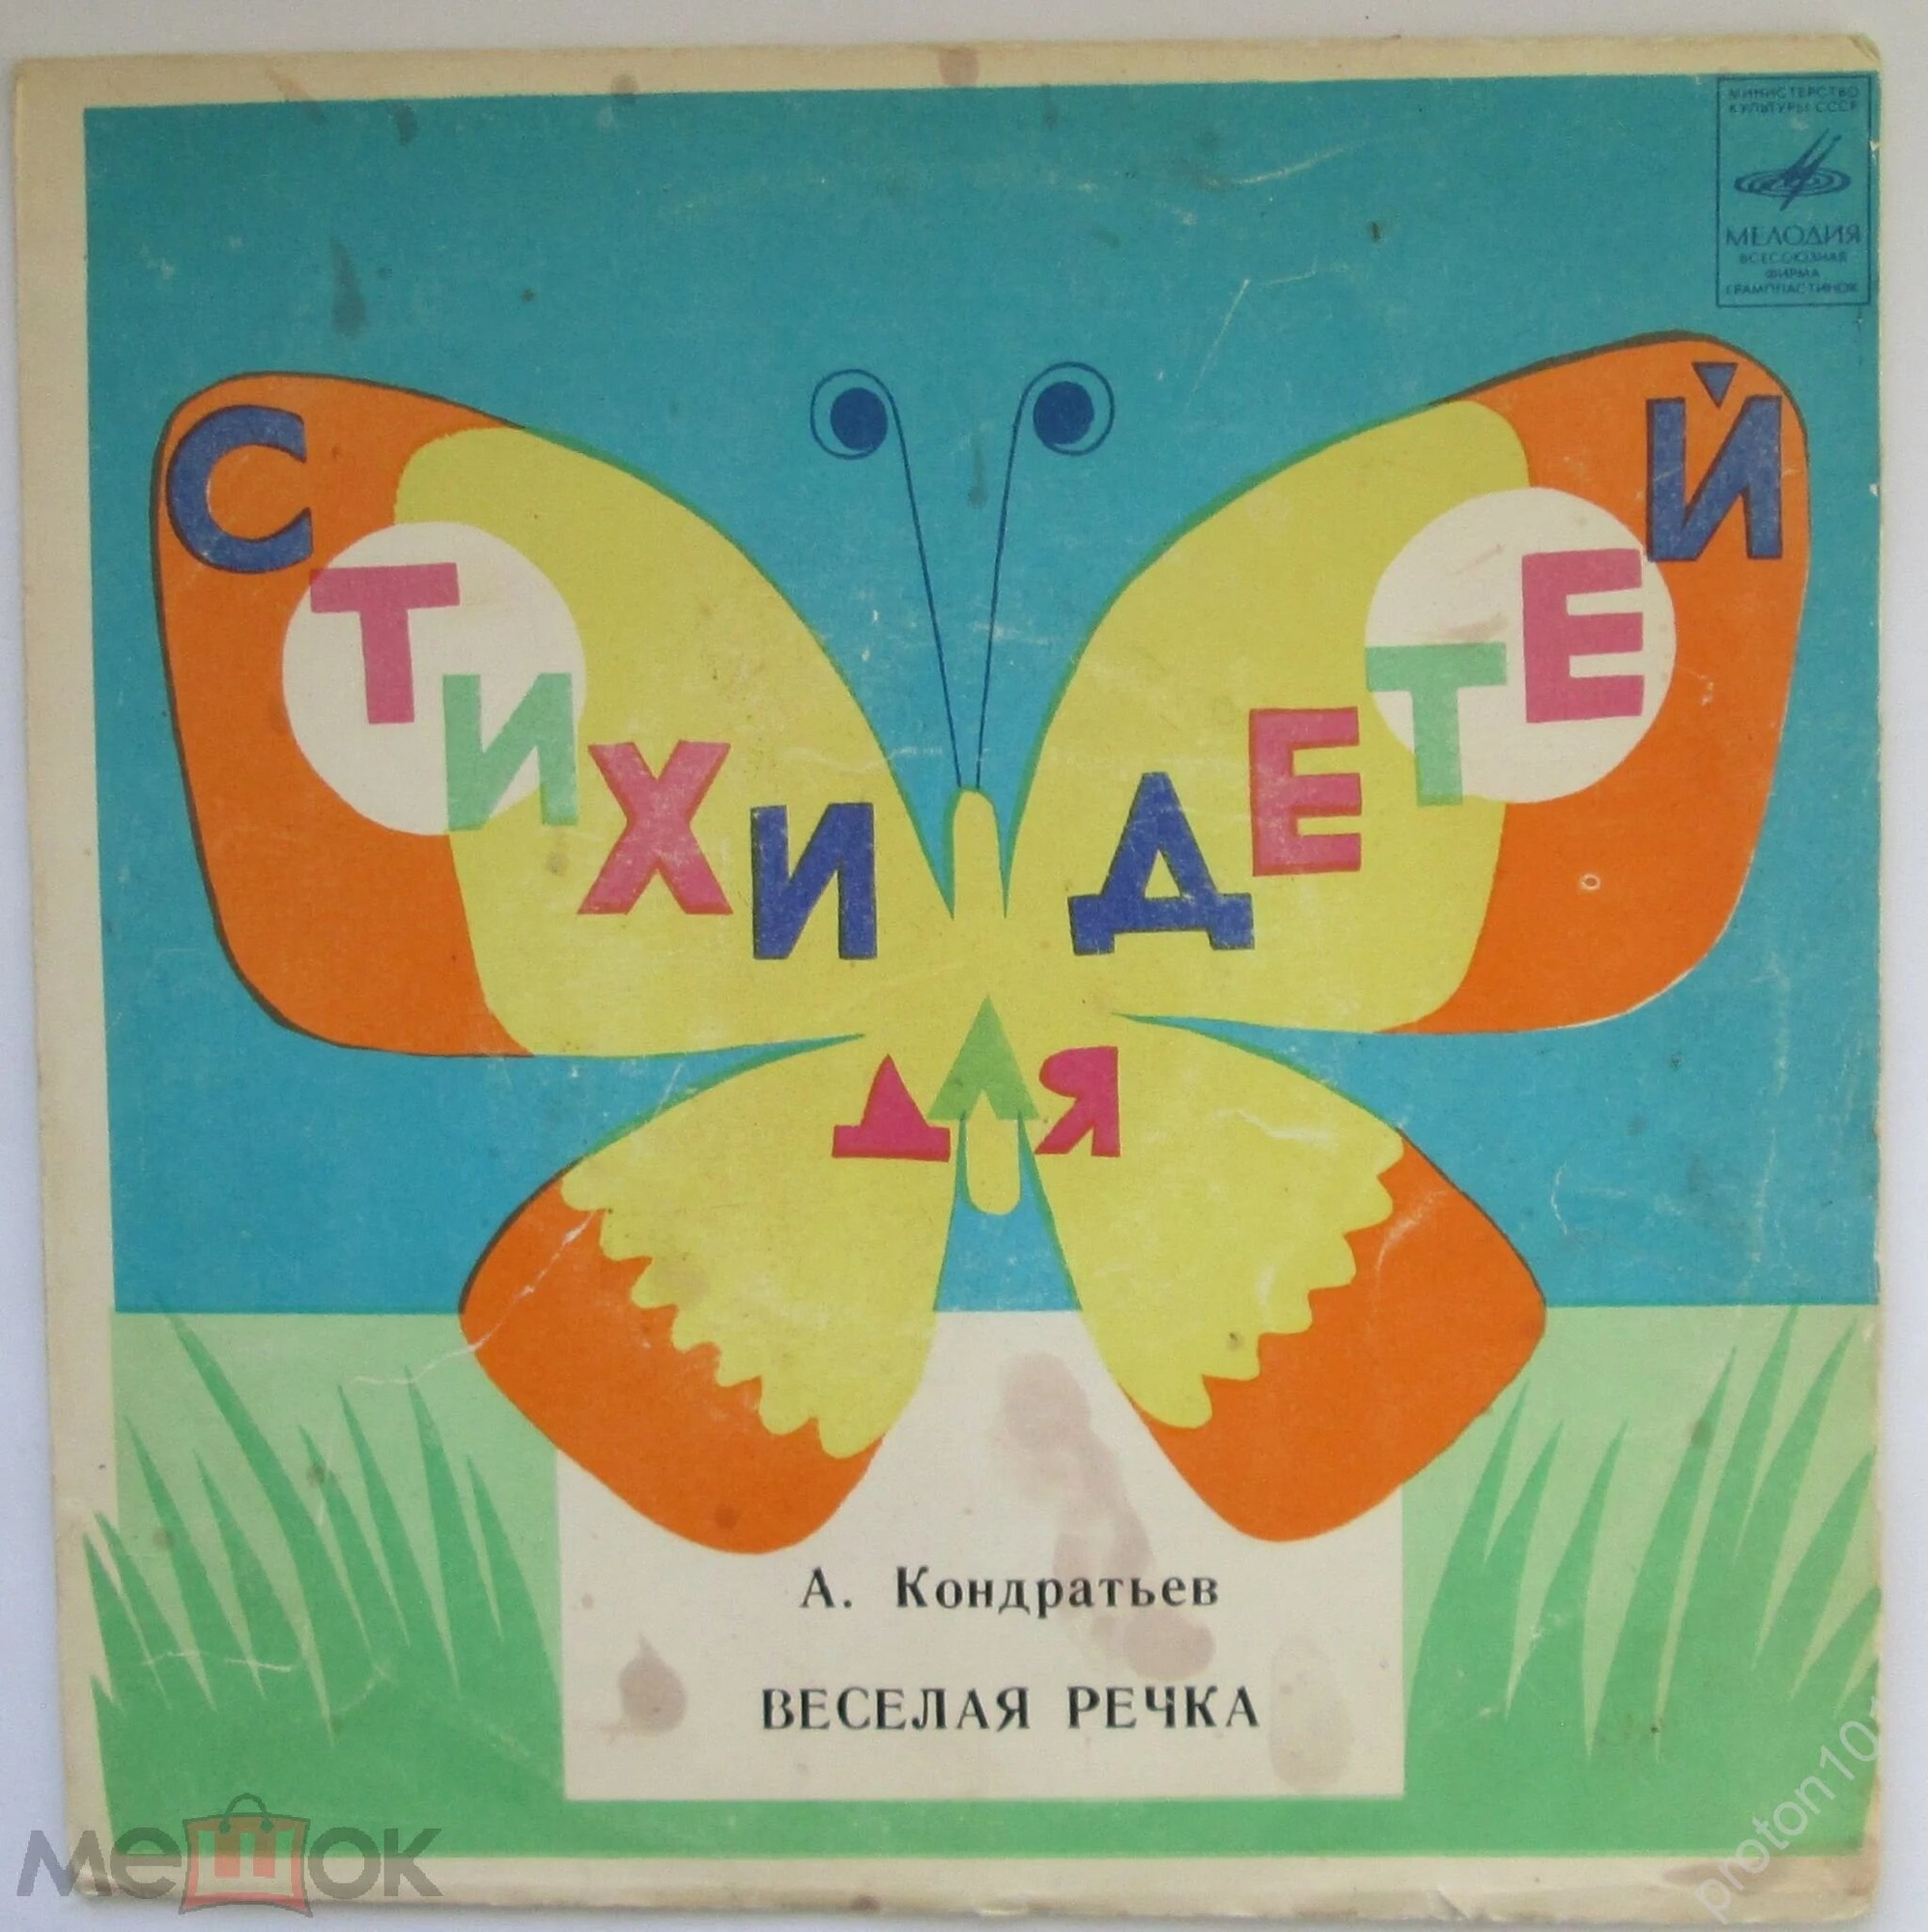 Алексей КОНДРАТЬЕВ (1935): «Весёлая речка», стихи для детей.